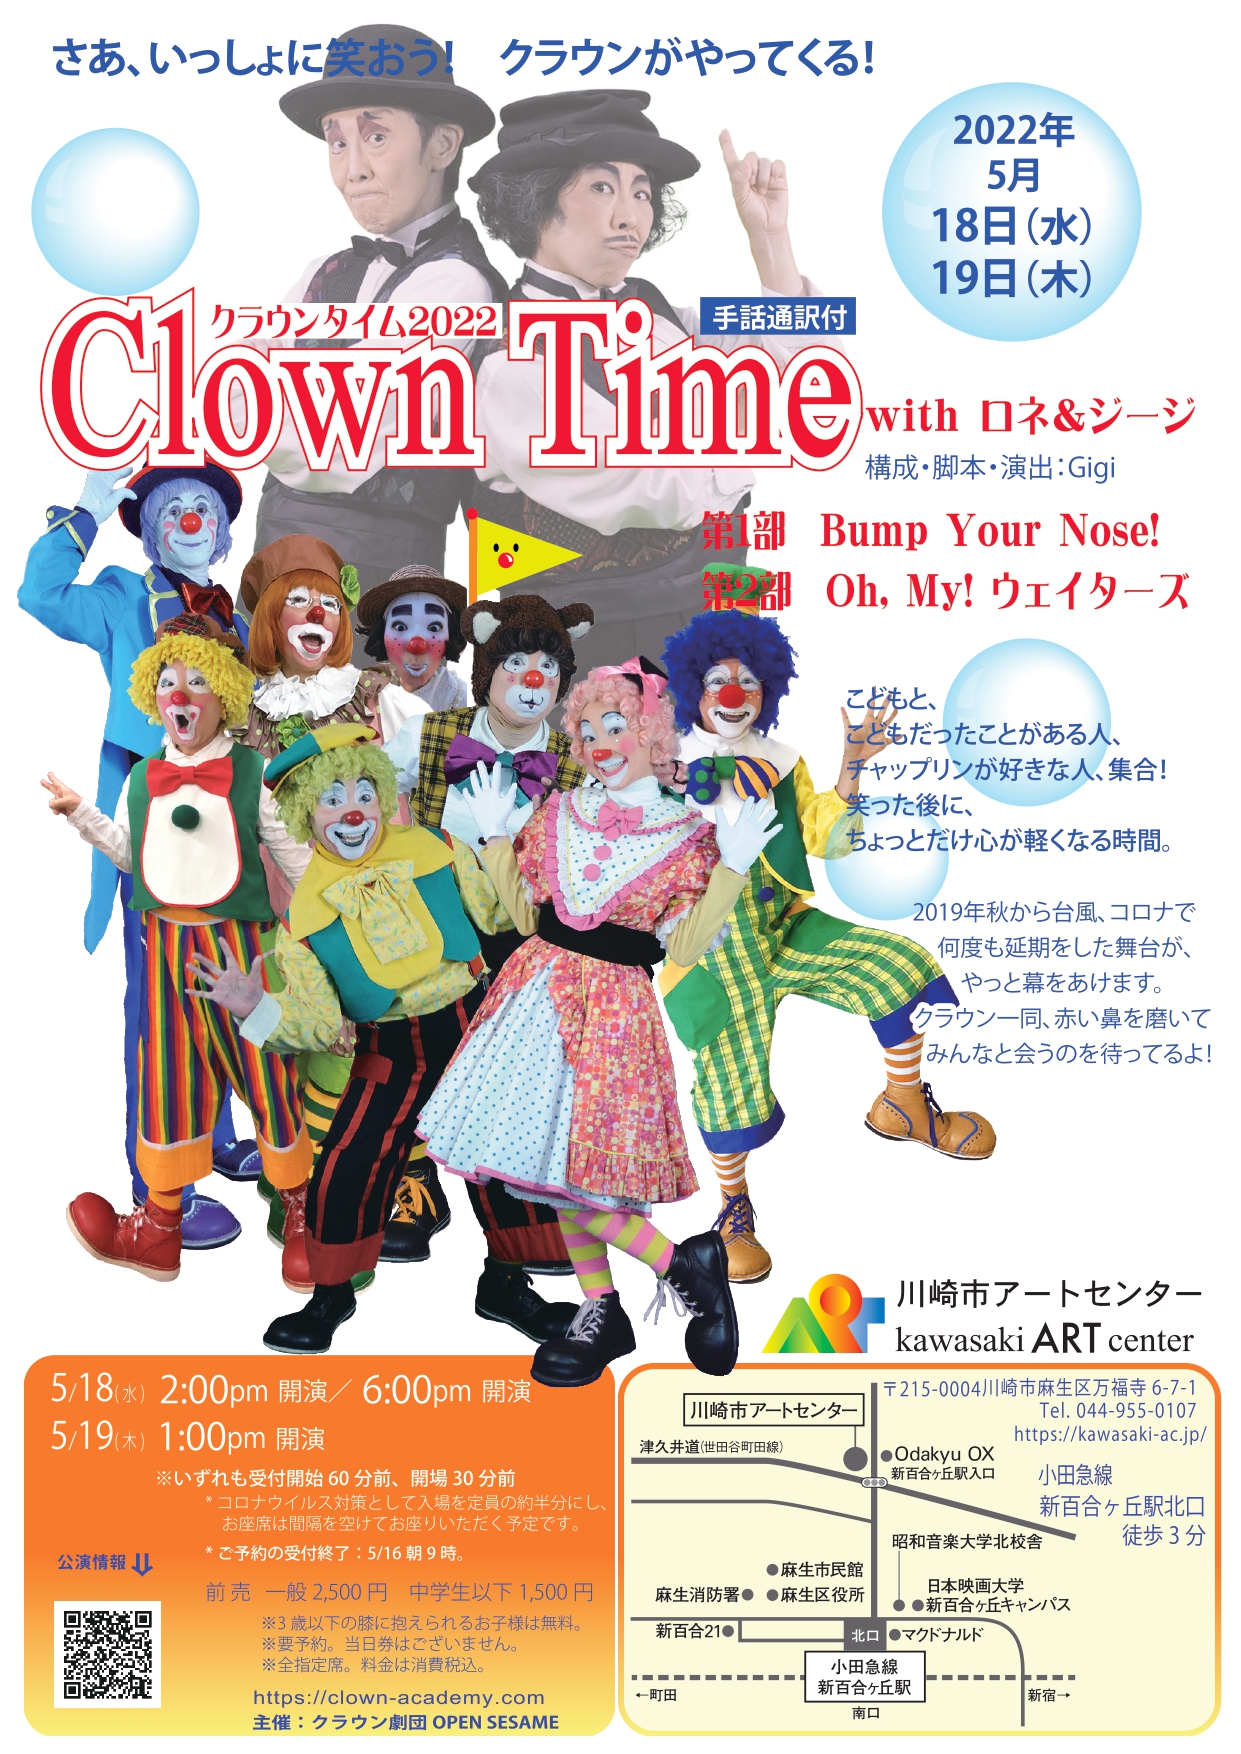 イメージ：劇場公演「Clown Time 2022 」